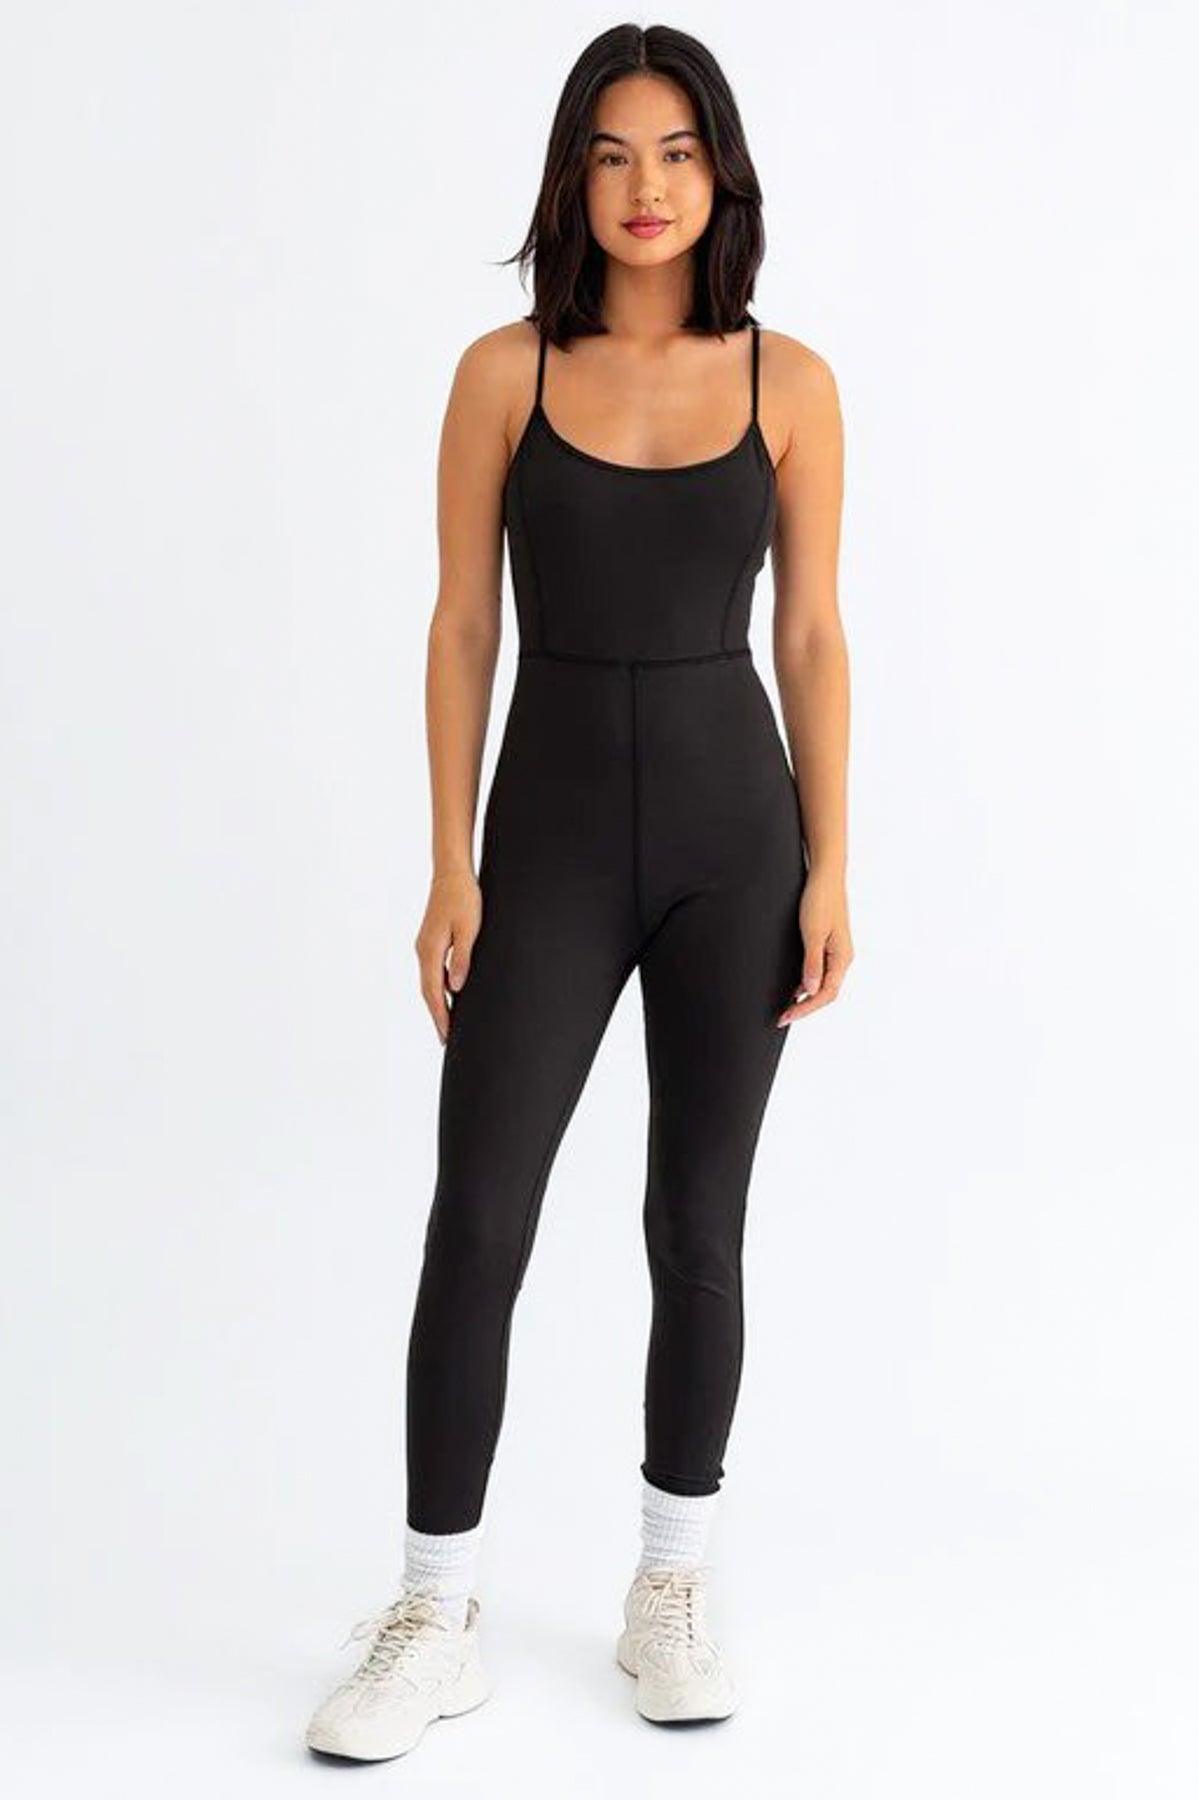 Black Adjustable Strap Bodycone Jumpsuit - Tasha Apparel Wholesale